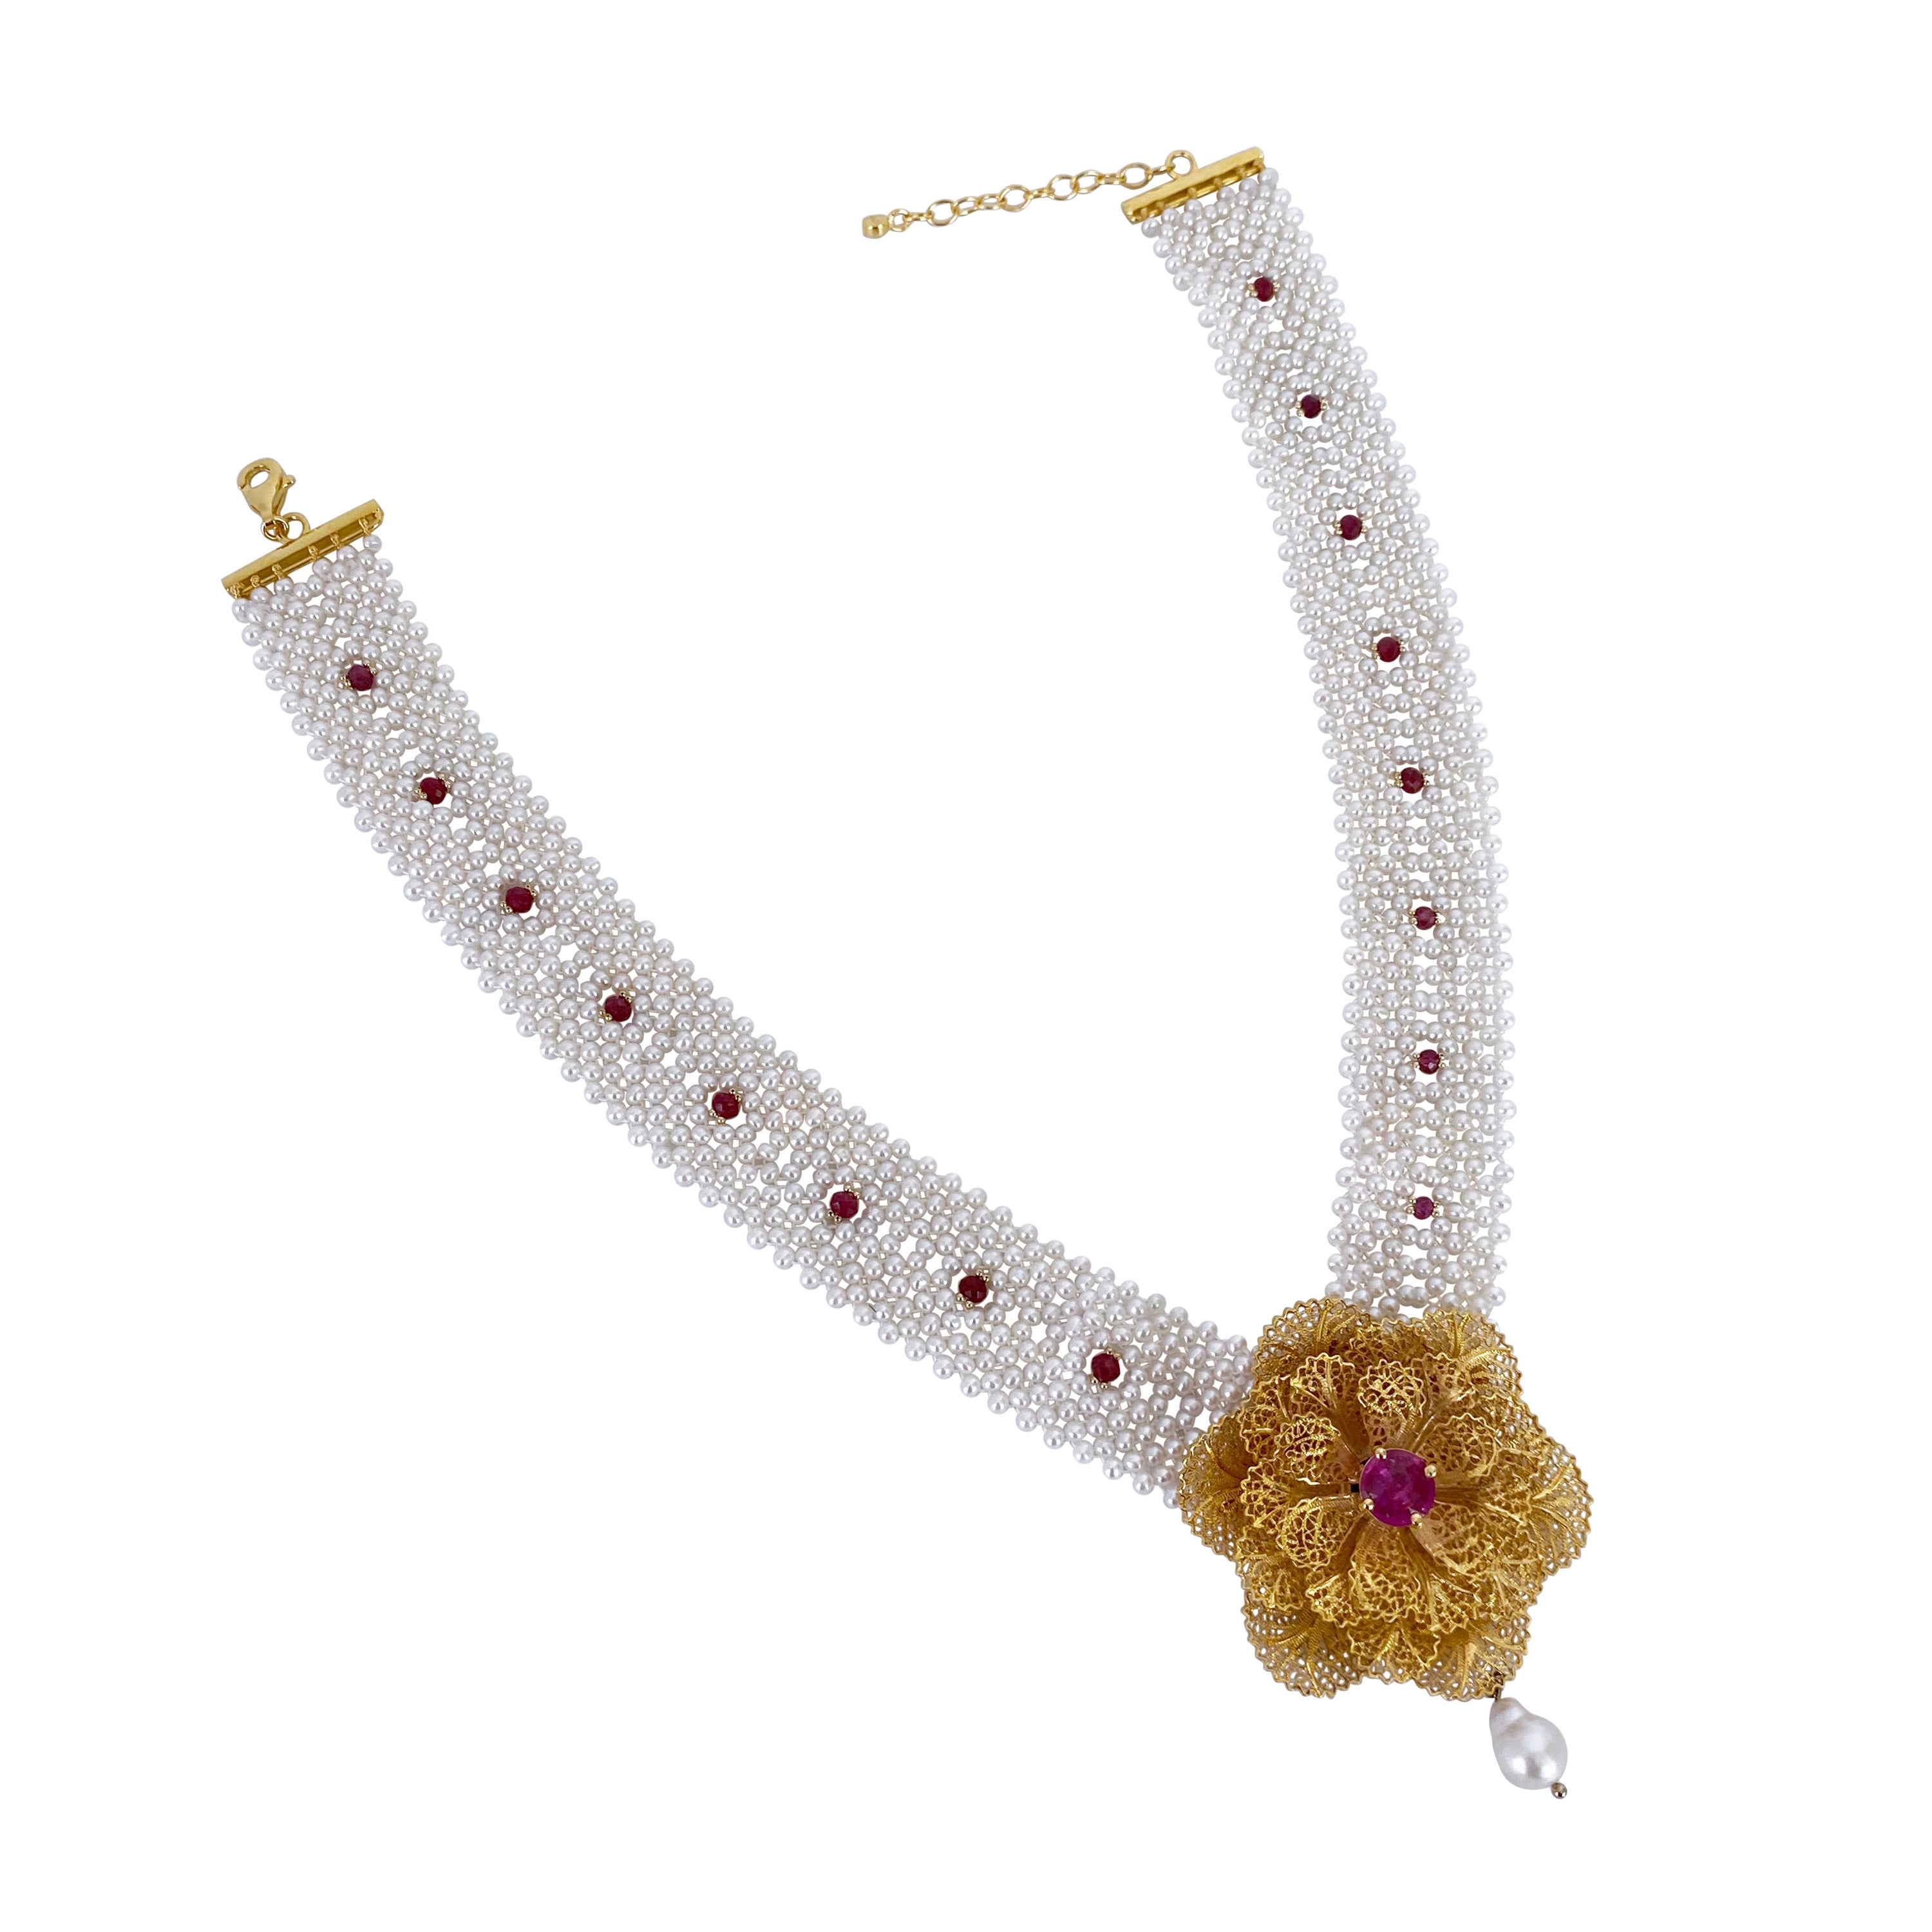 Marina J., collier tissé en perles, rubis et topaze rose, unique en son genre